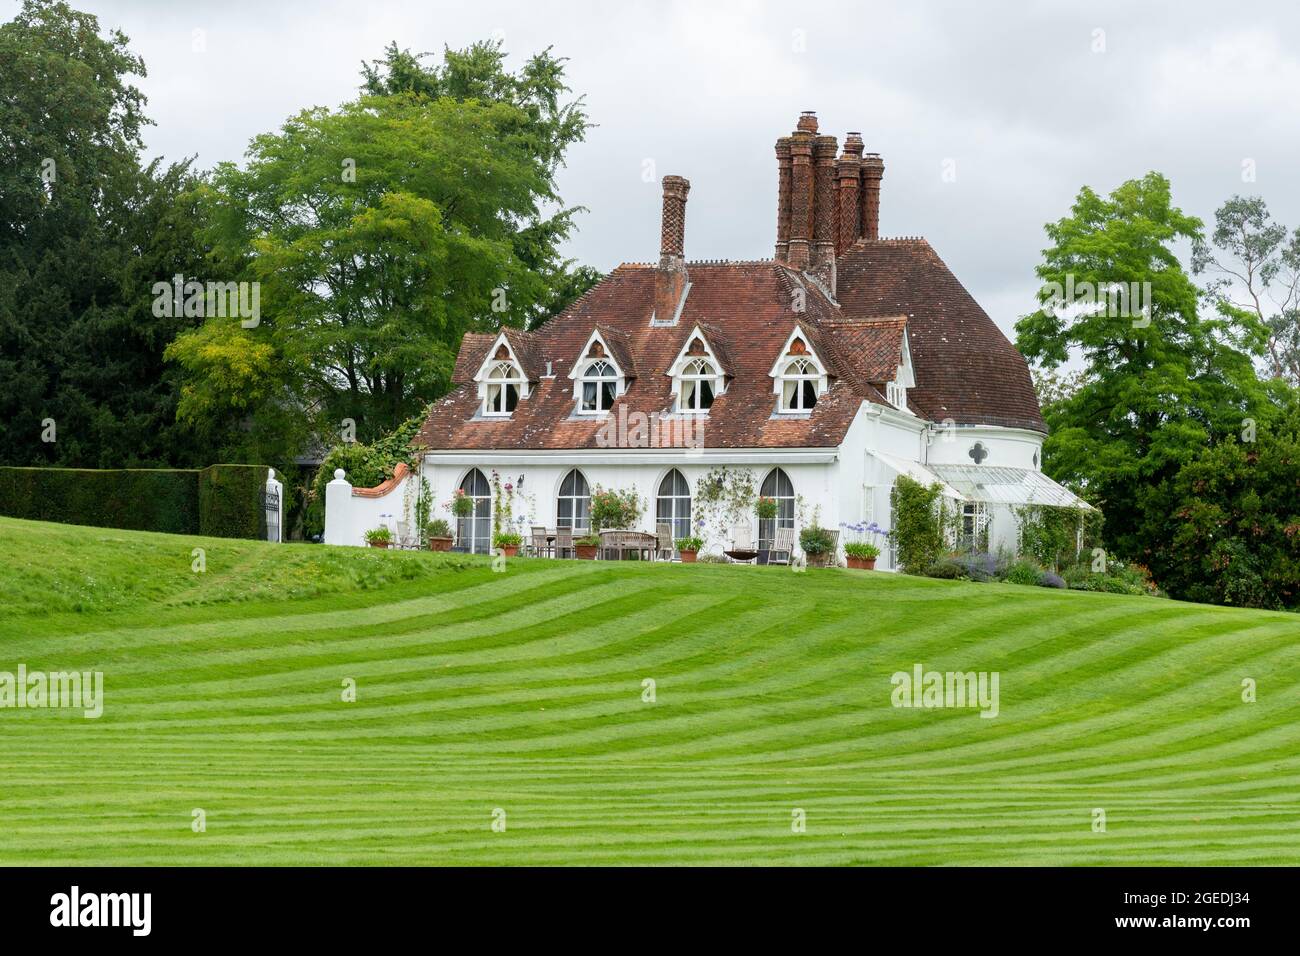 Houghton Lodge House and Gardens on the River Test dans le Hampshire, Angleterre, Royaume-Uni, pendant l'été Banque D'Images